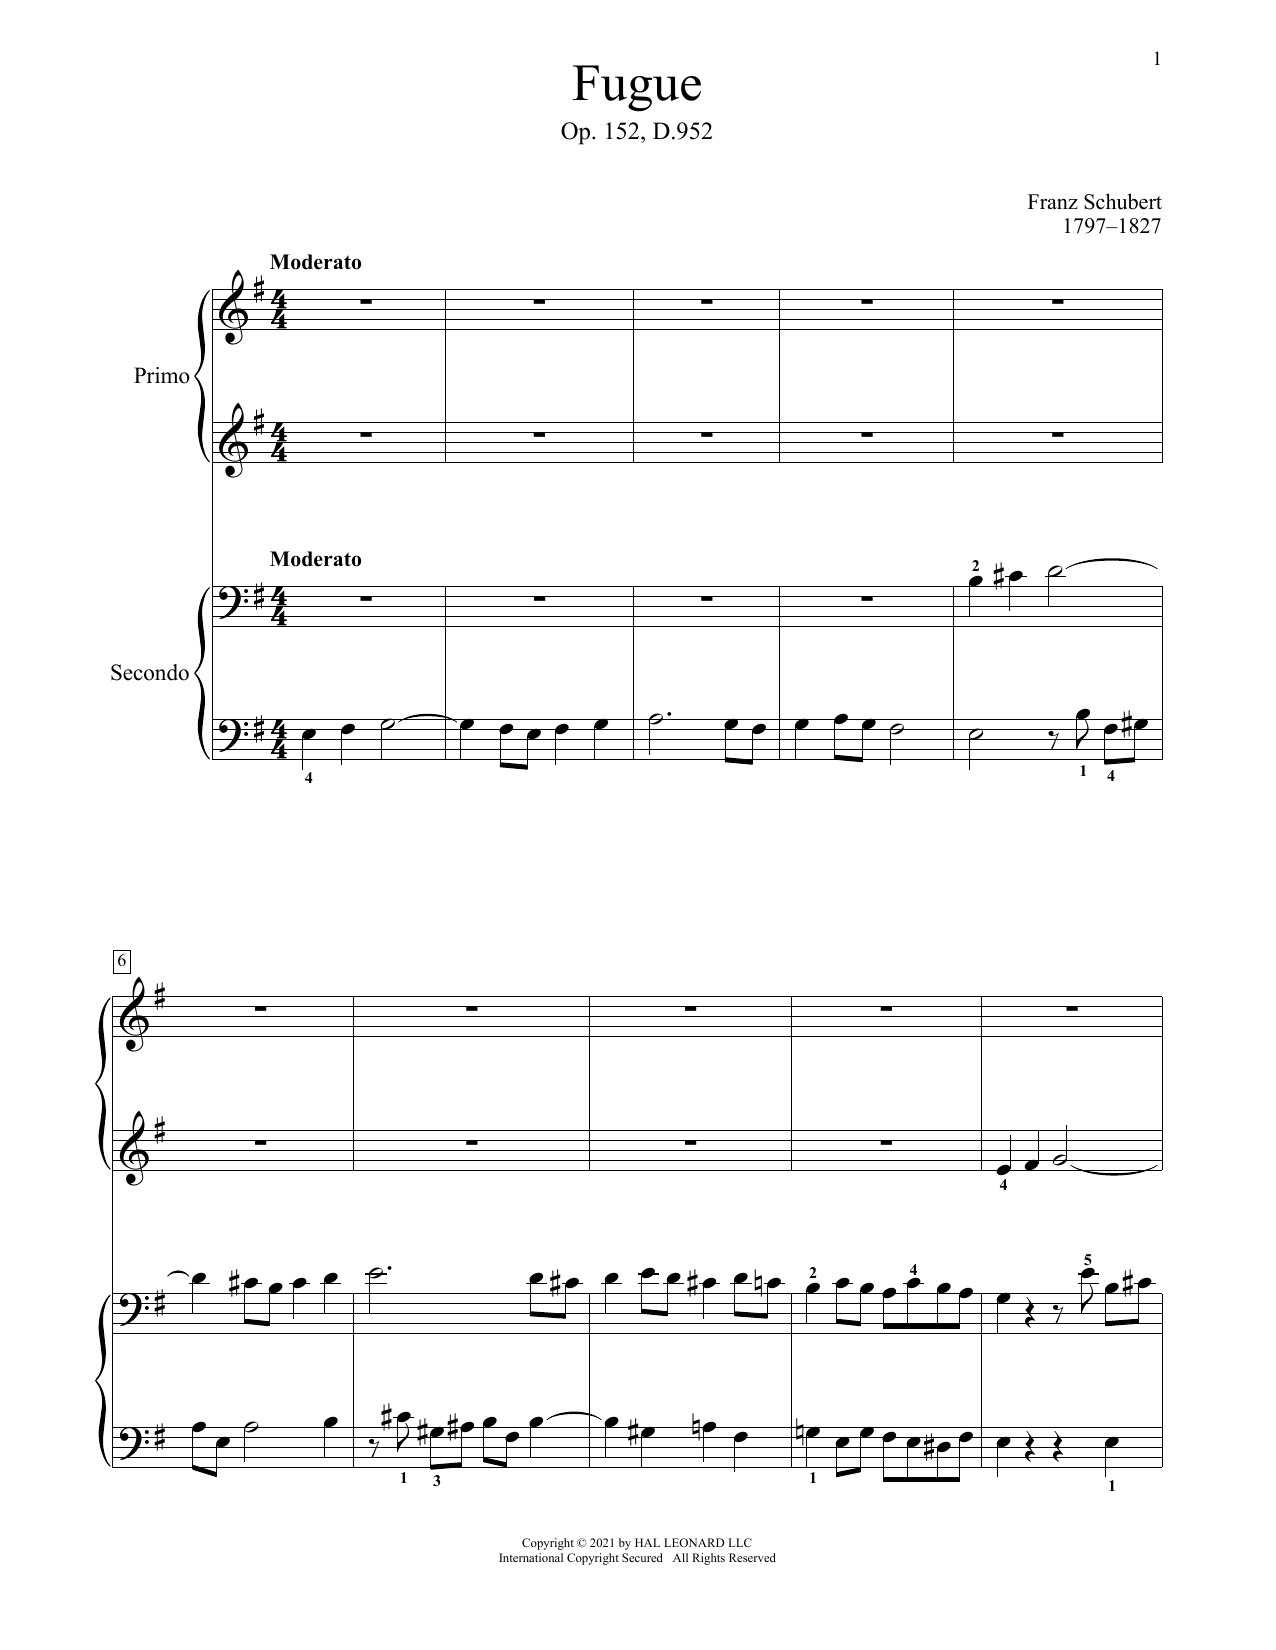 Franz Schubert Fugue, Op. 152, D. 952 sheet music notes and chords arranged for Piano Duet